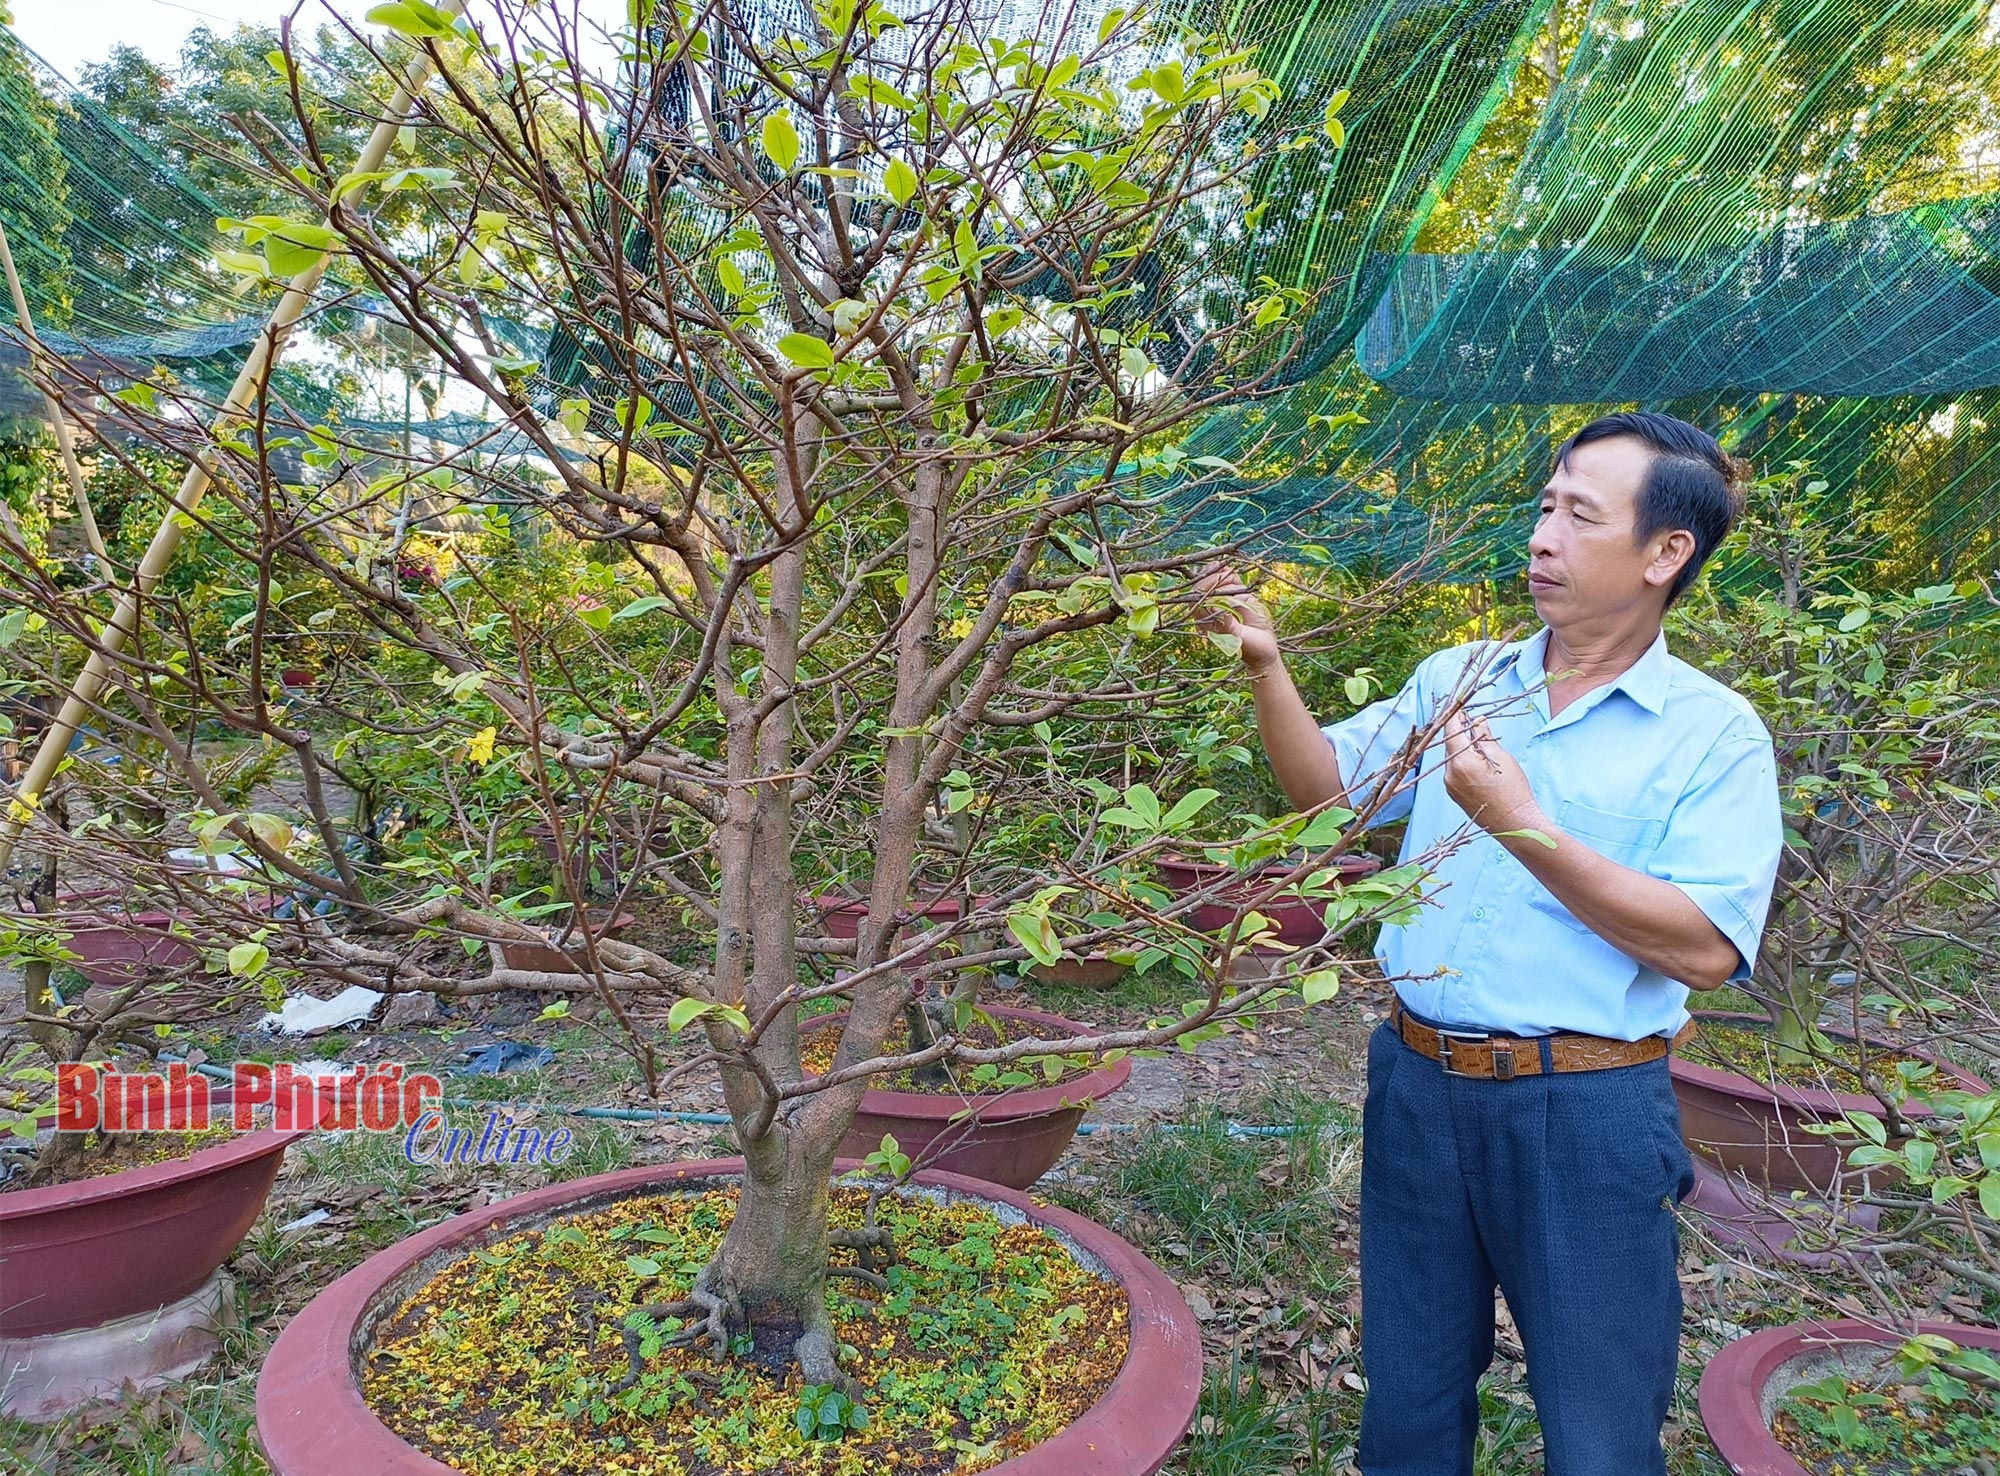 Sau Tết, ở Bình Phước là thời điểm vào mùa của nghề trồng cây cảnh đang hot, thu nhập tốt- Ảnh 1.